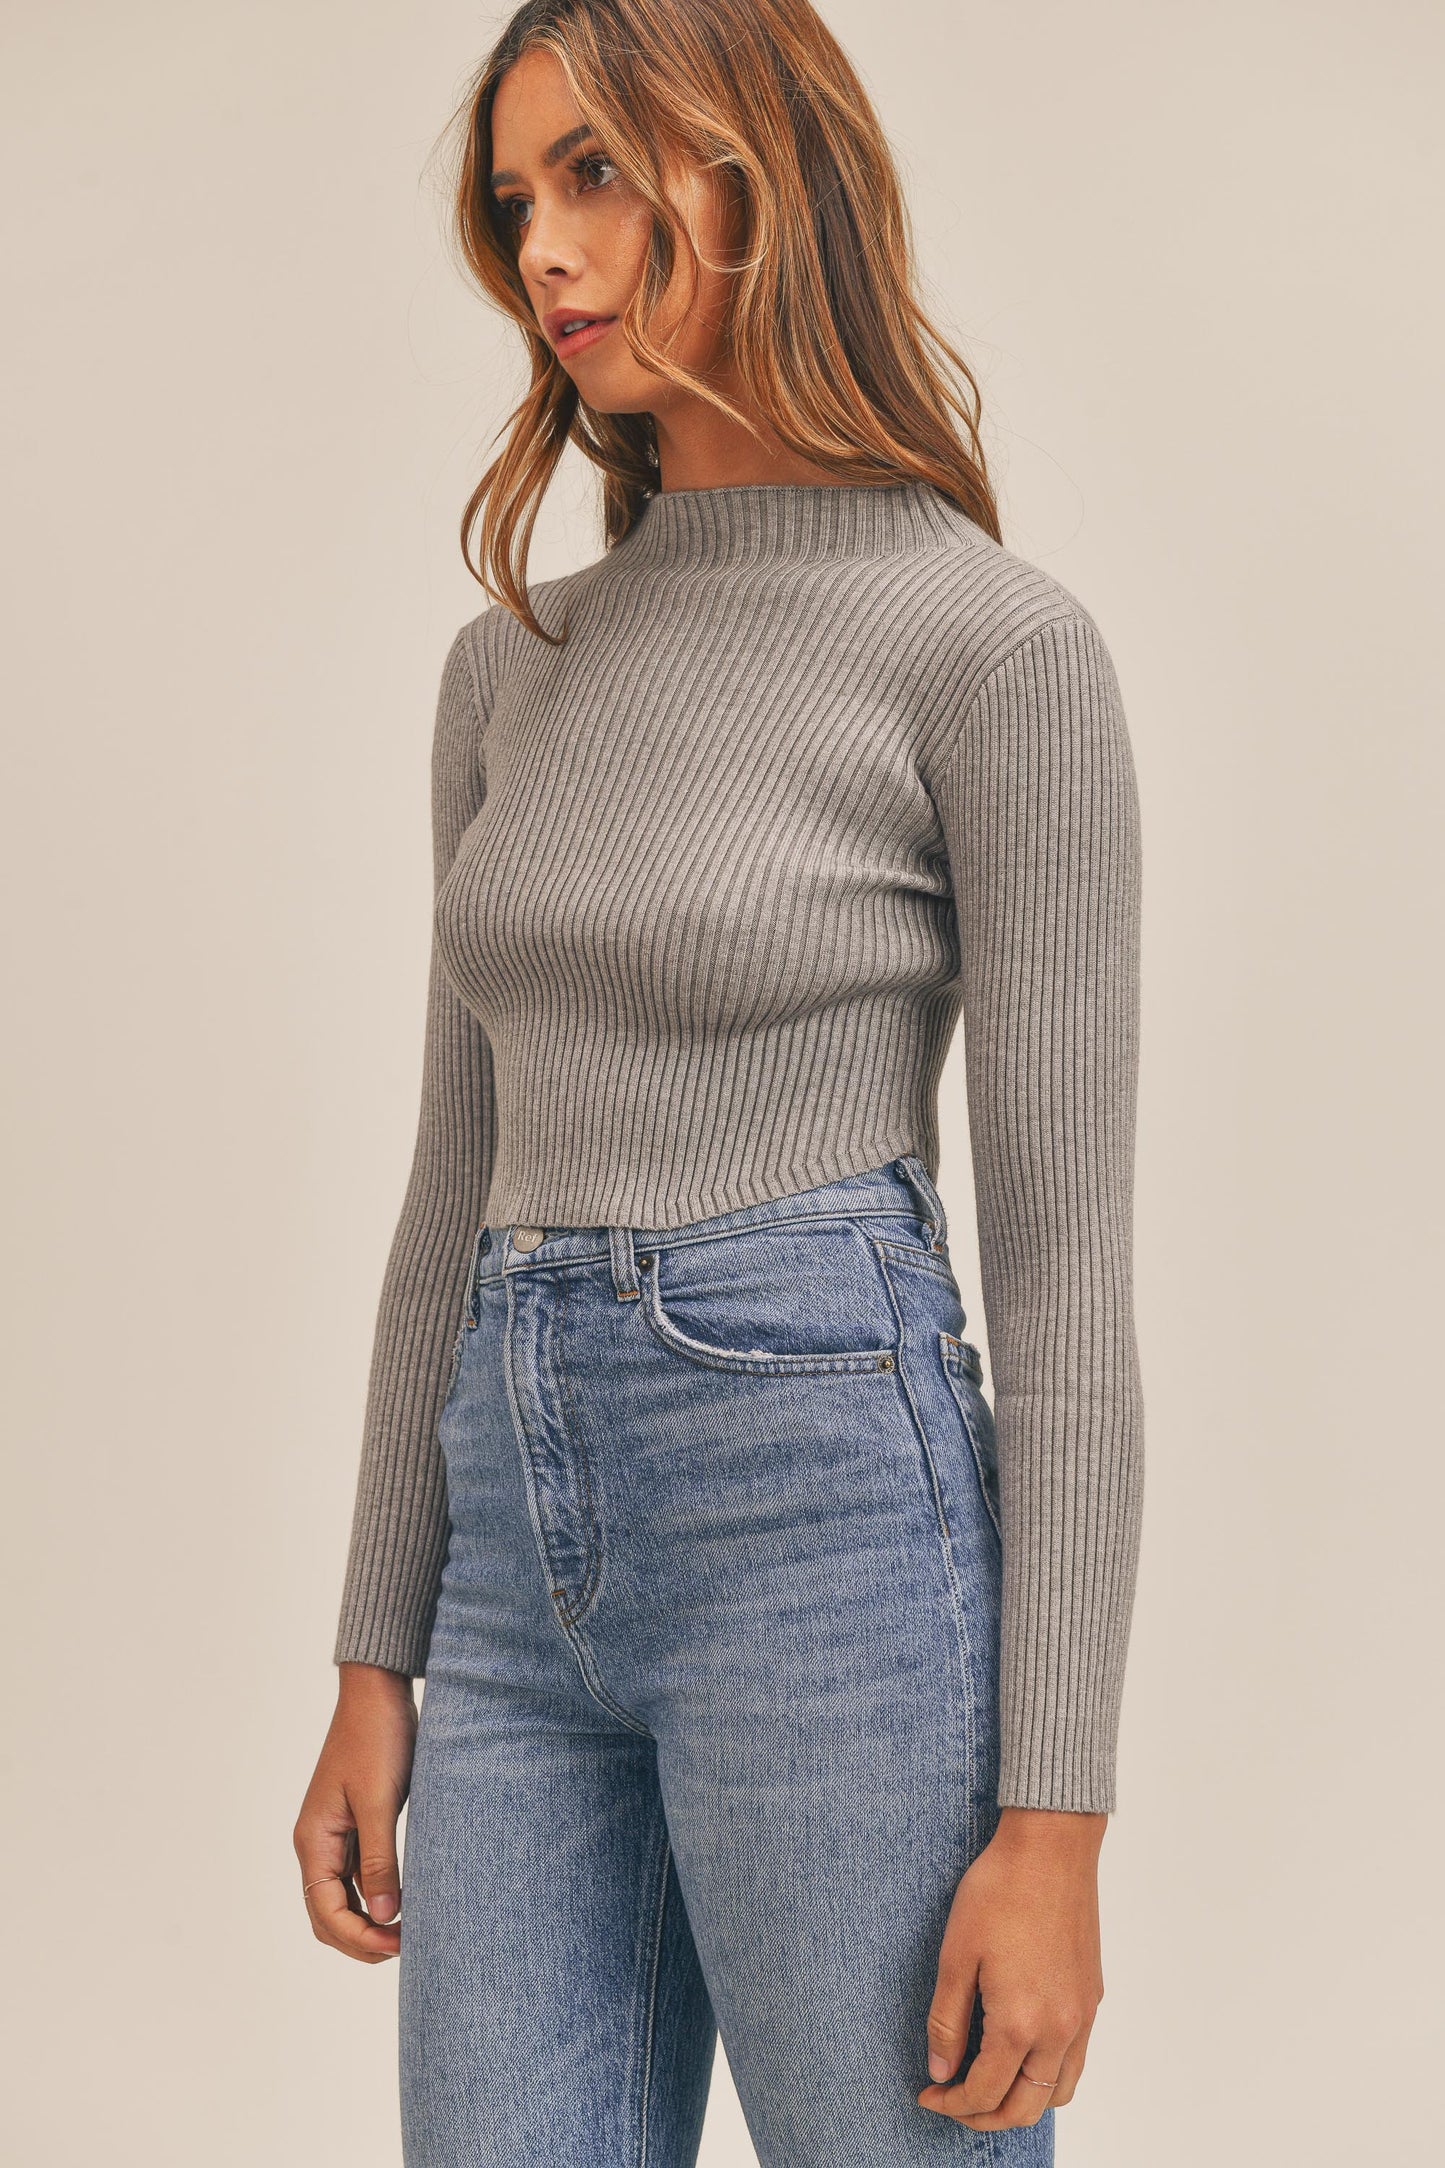 Sloan Sweater Top